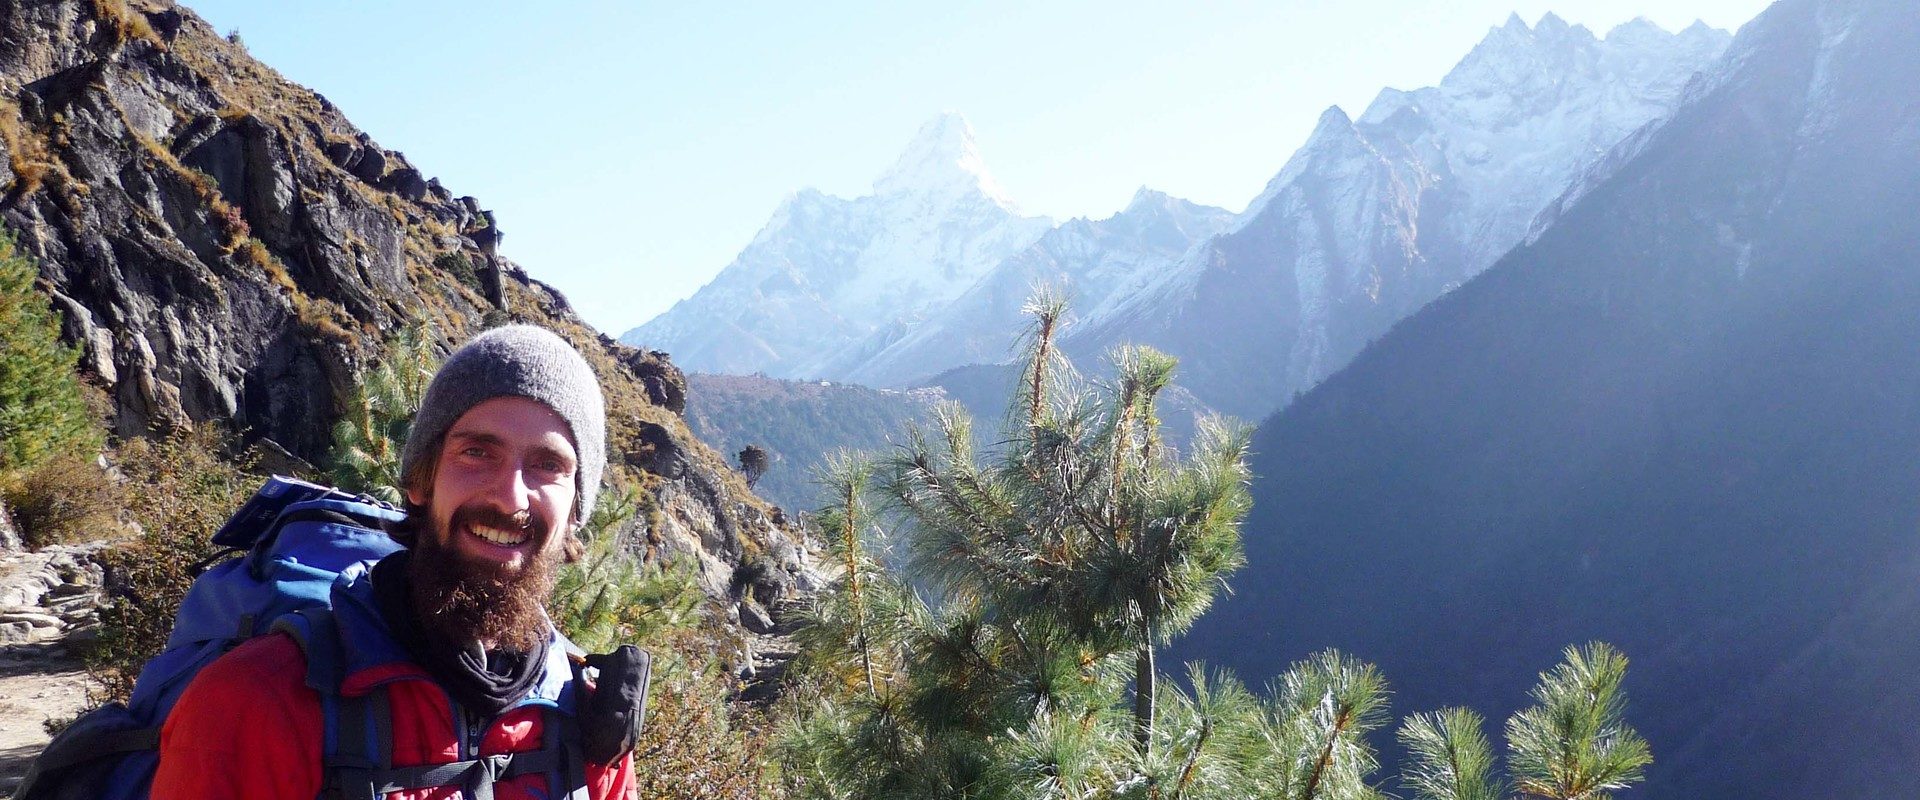 Mario Reptschik bei einer Wanderung in der Bergwelt